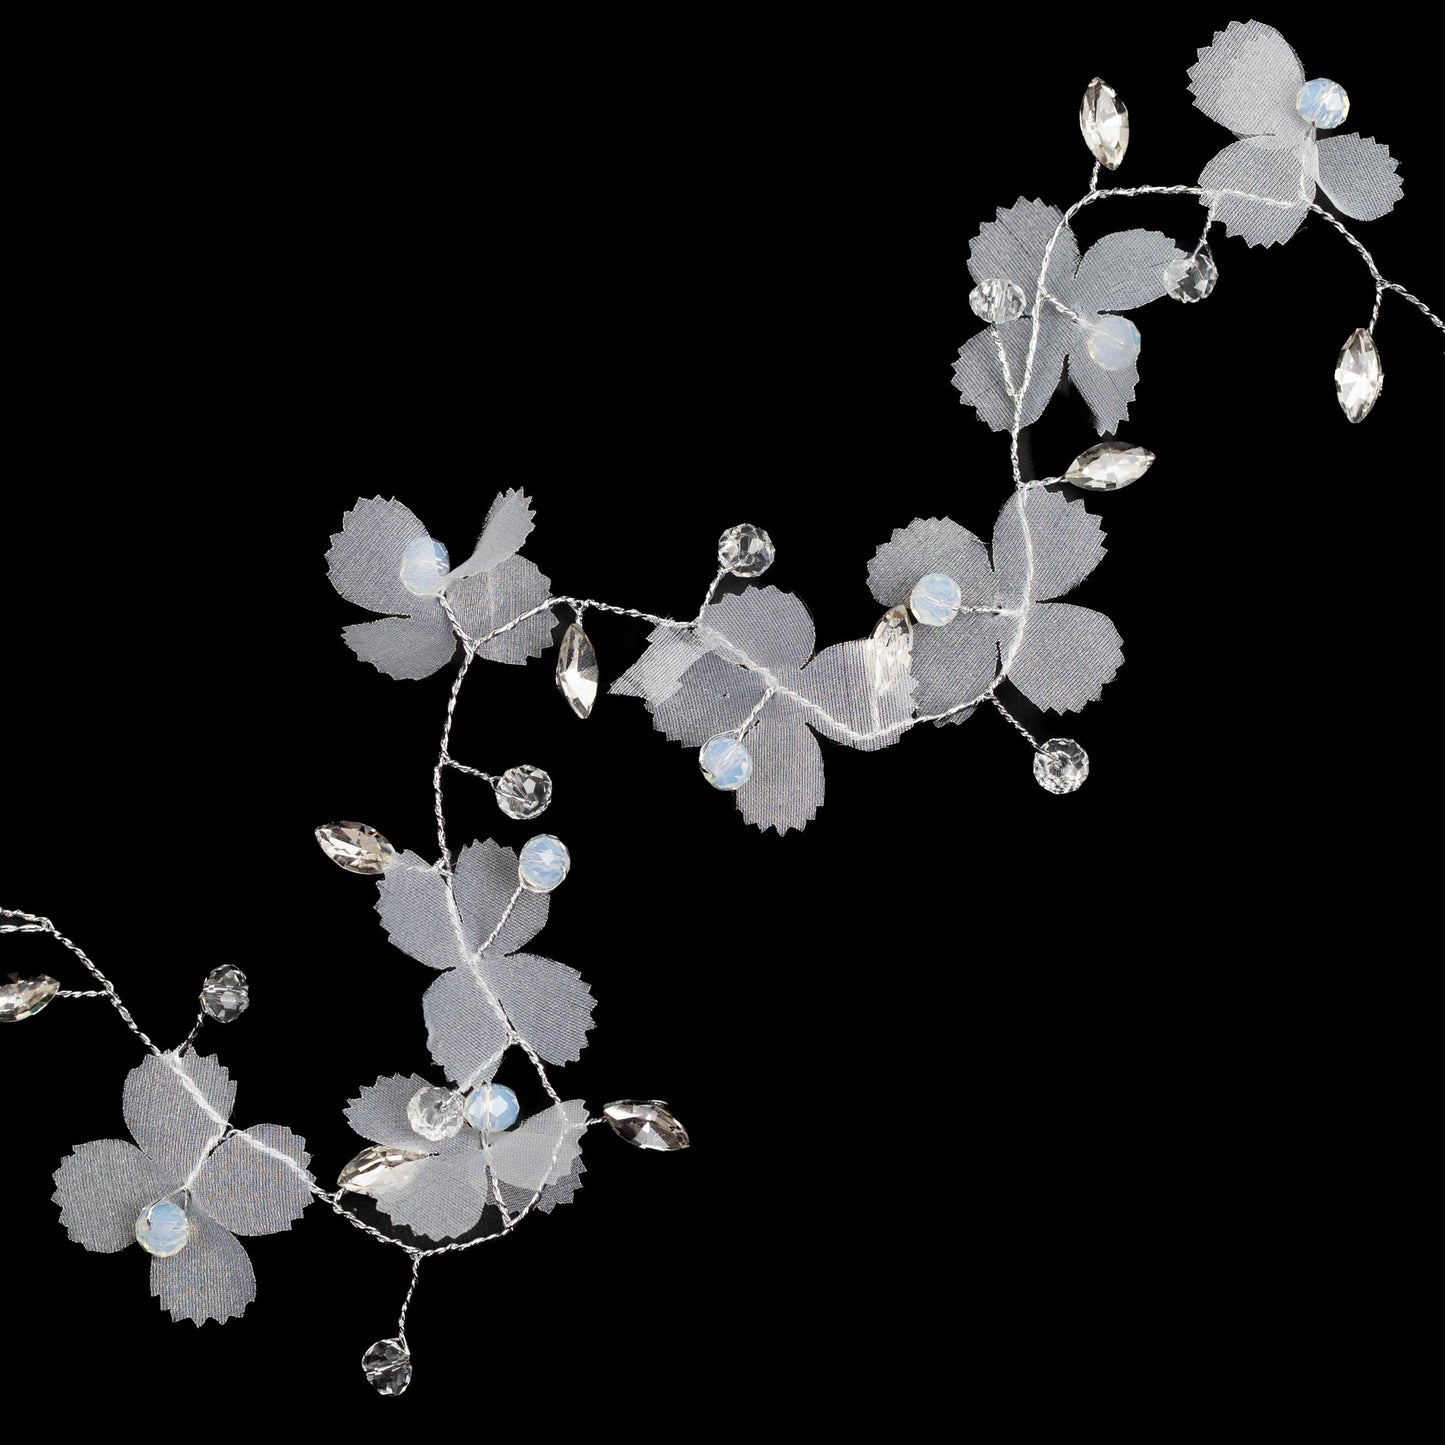 Diademă elegantă maleabilă cu pietre, flori - Argintiu Magic